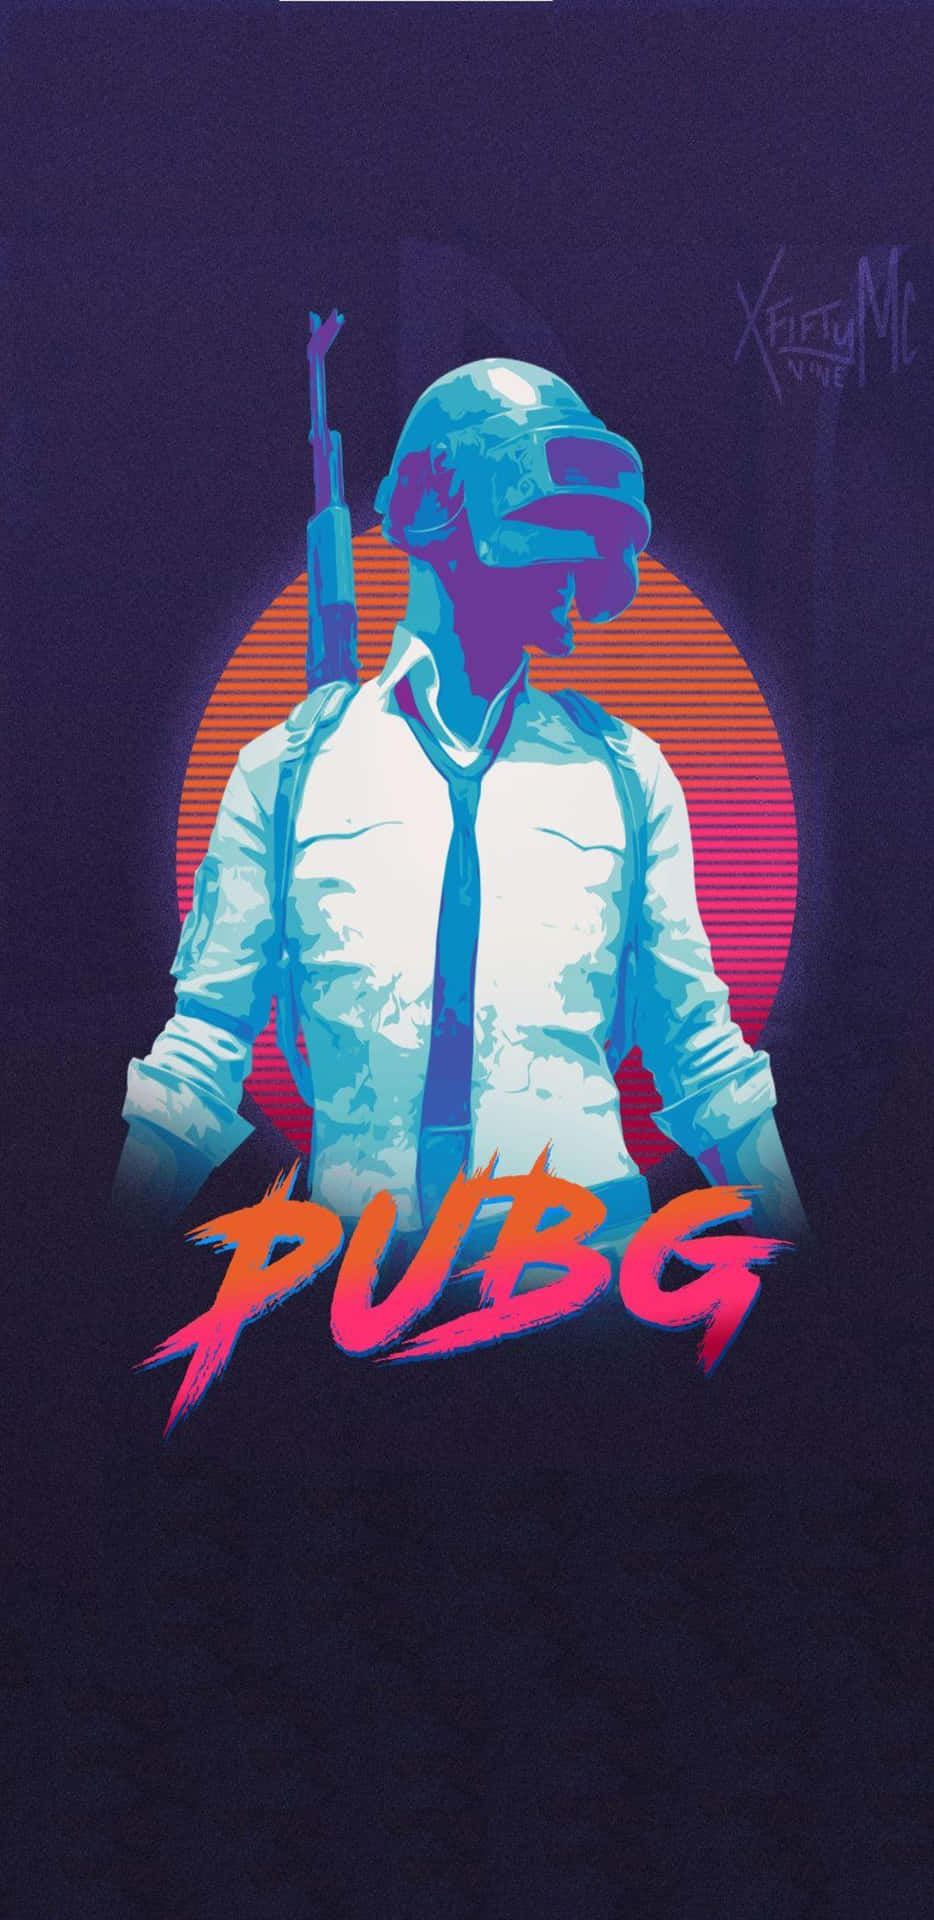 Pixel3xl Playerunknown's Battlegrounds Hintergrund Poster Mit Miami Vice Effekt